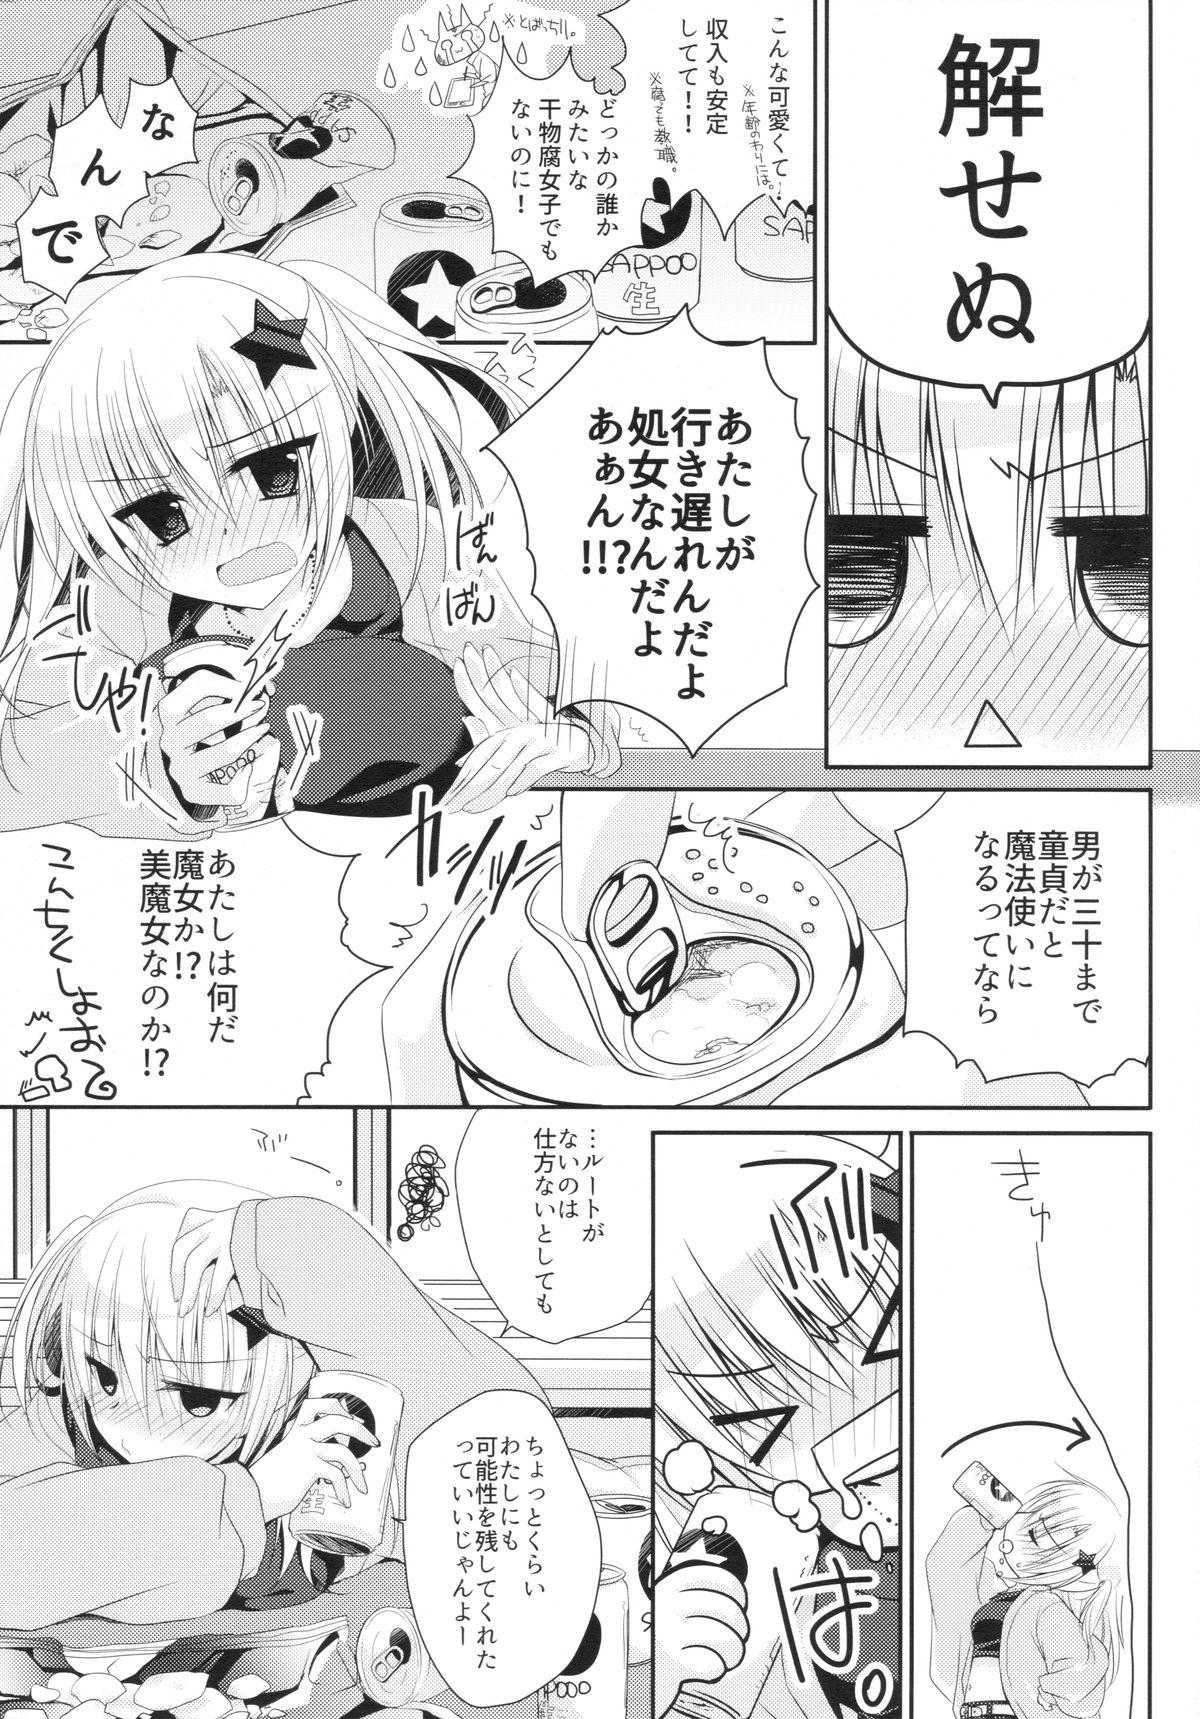 Corrida Yuka Sensei 29-sai Puto - Page 4